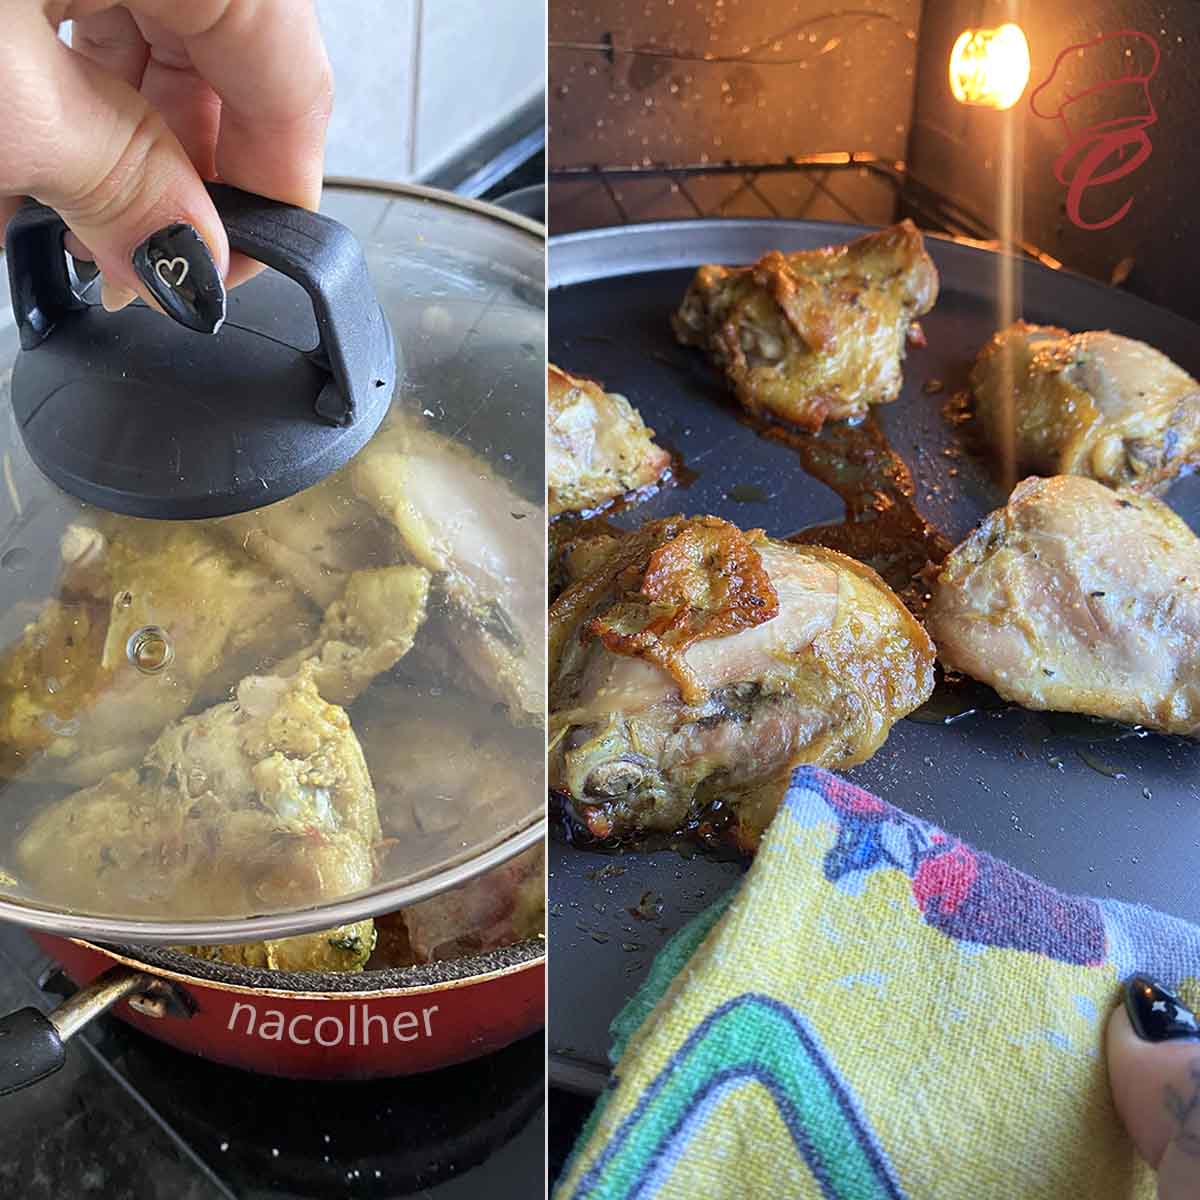 cozinhando o frango em uma panela e na outra foto o frango esta numa forma saindo ao forno